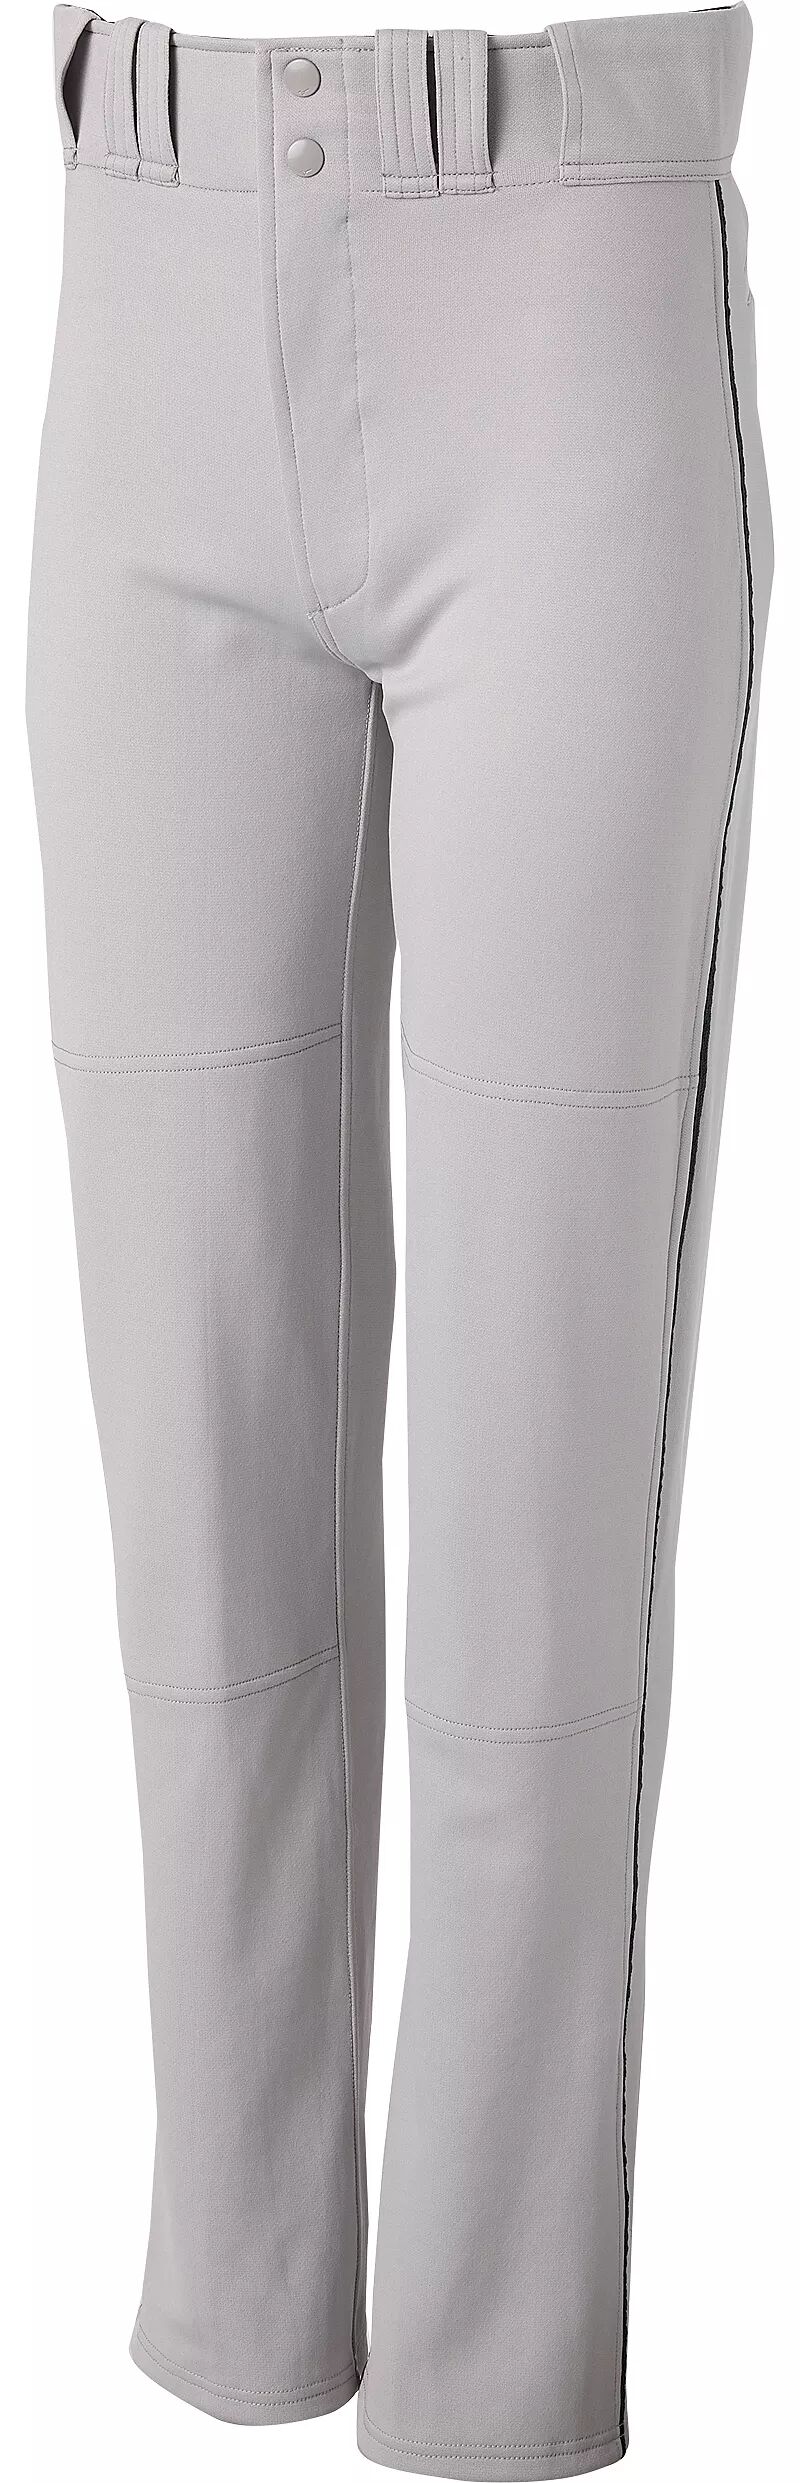 Мужские бейсбольные брюки Mizuno MVP Pro с окантовкой, серый/черный бейсбольные брюки 22